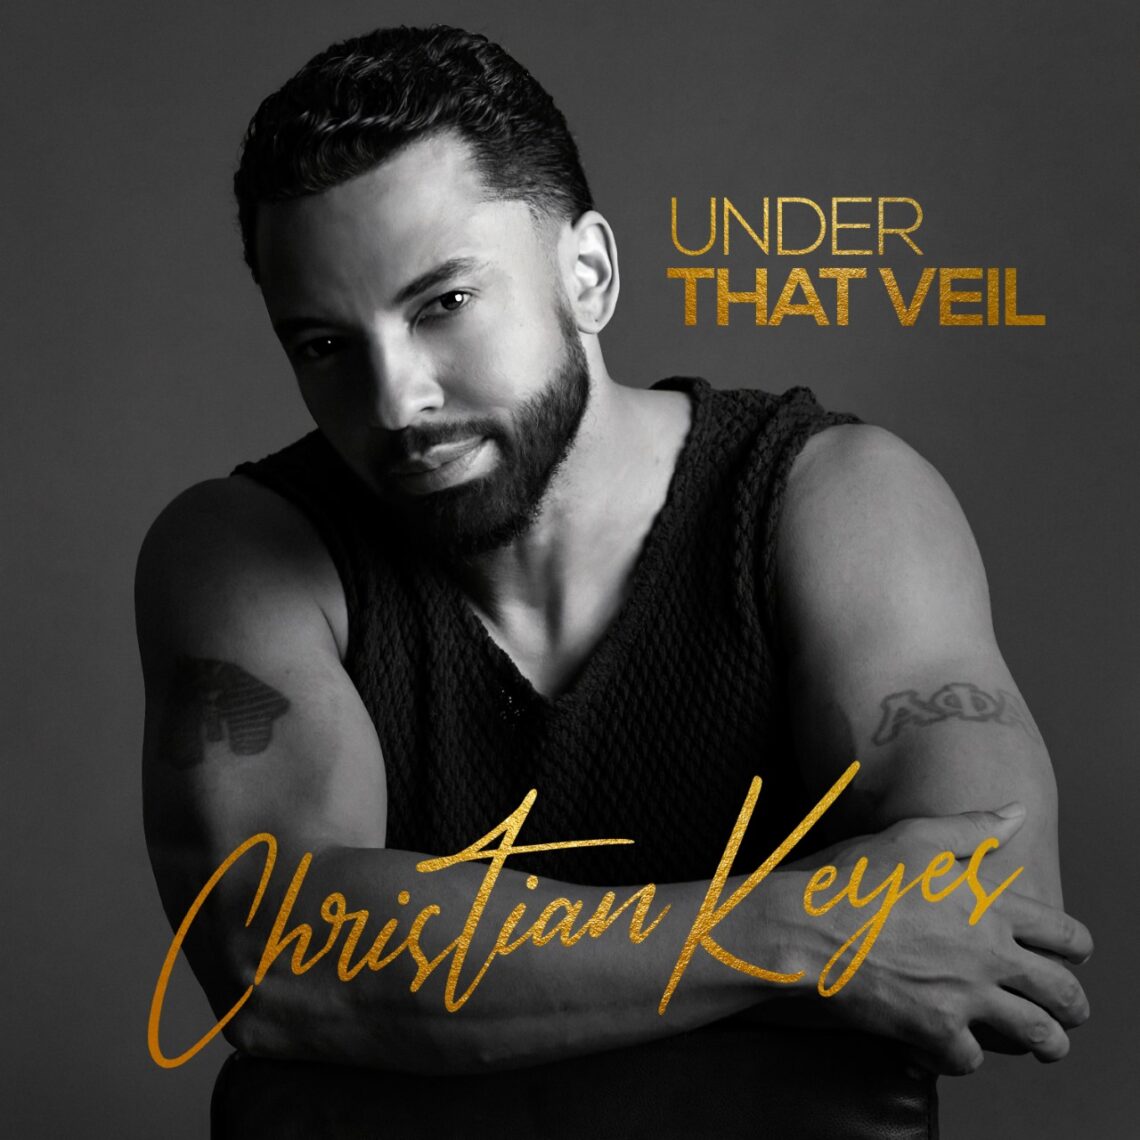 Christian Keyes Under That Veil single cover art